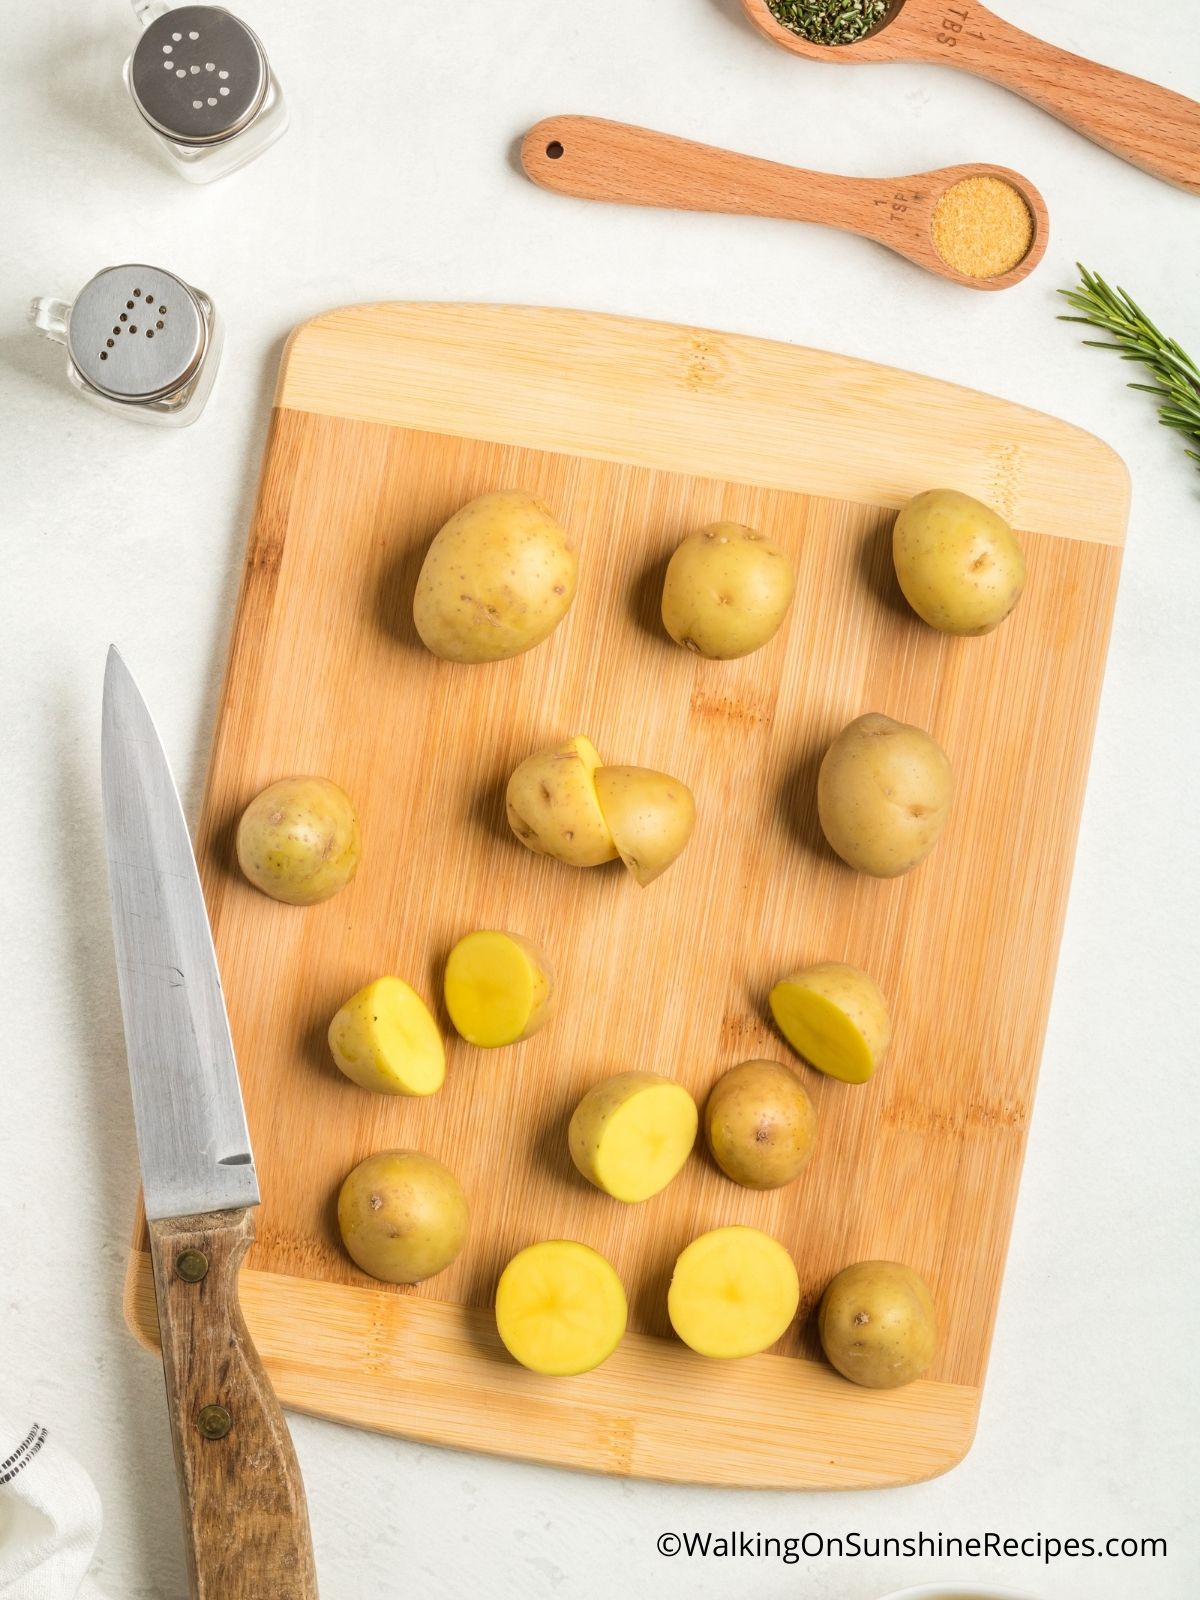 Cut potatoes in half on cutting board.